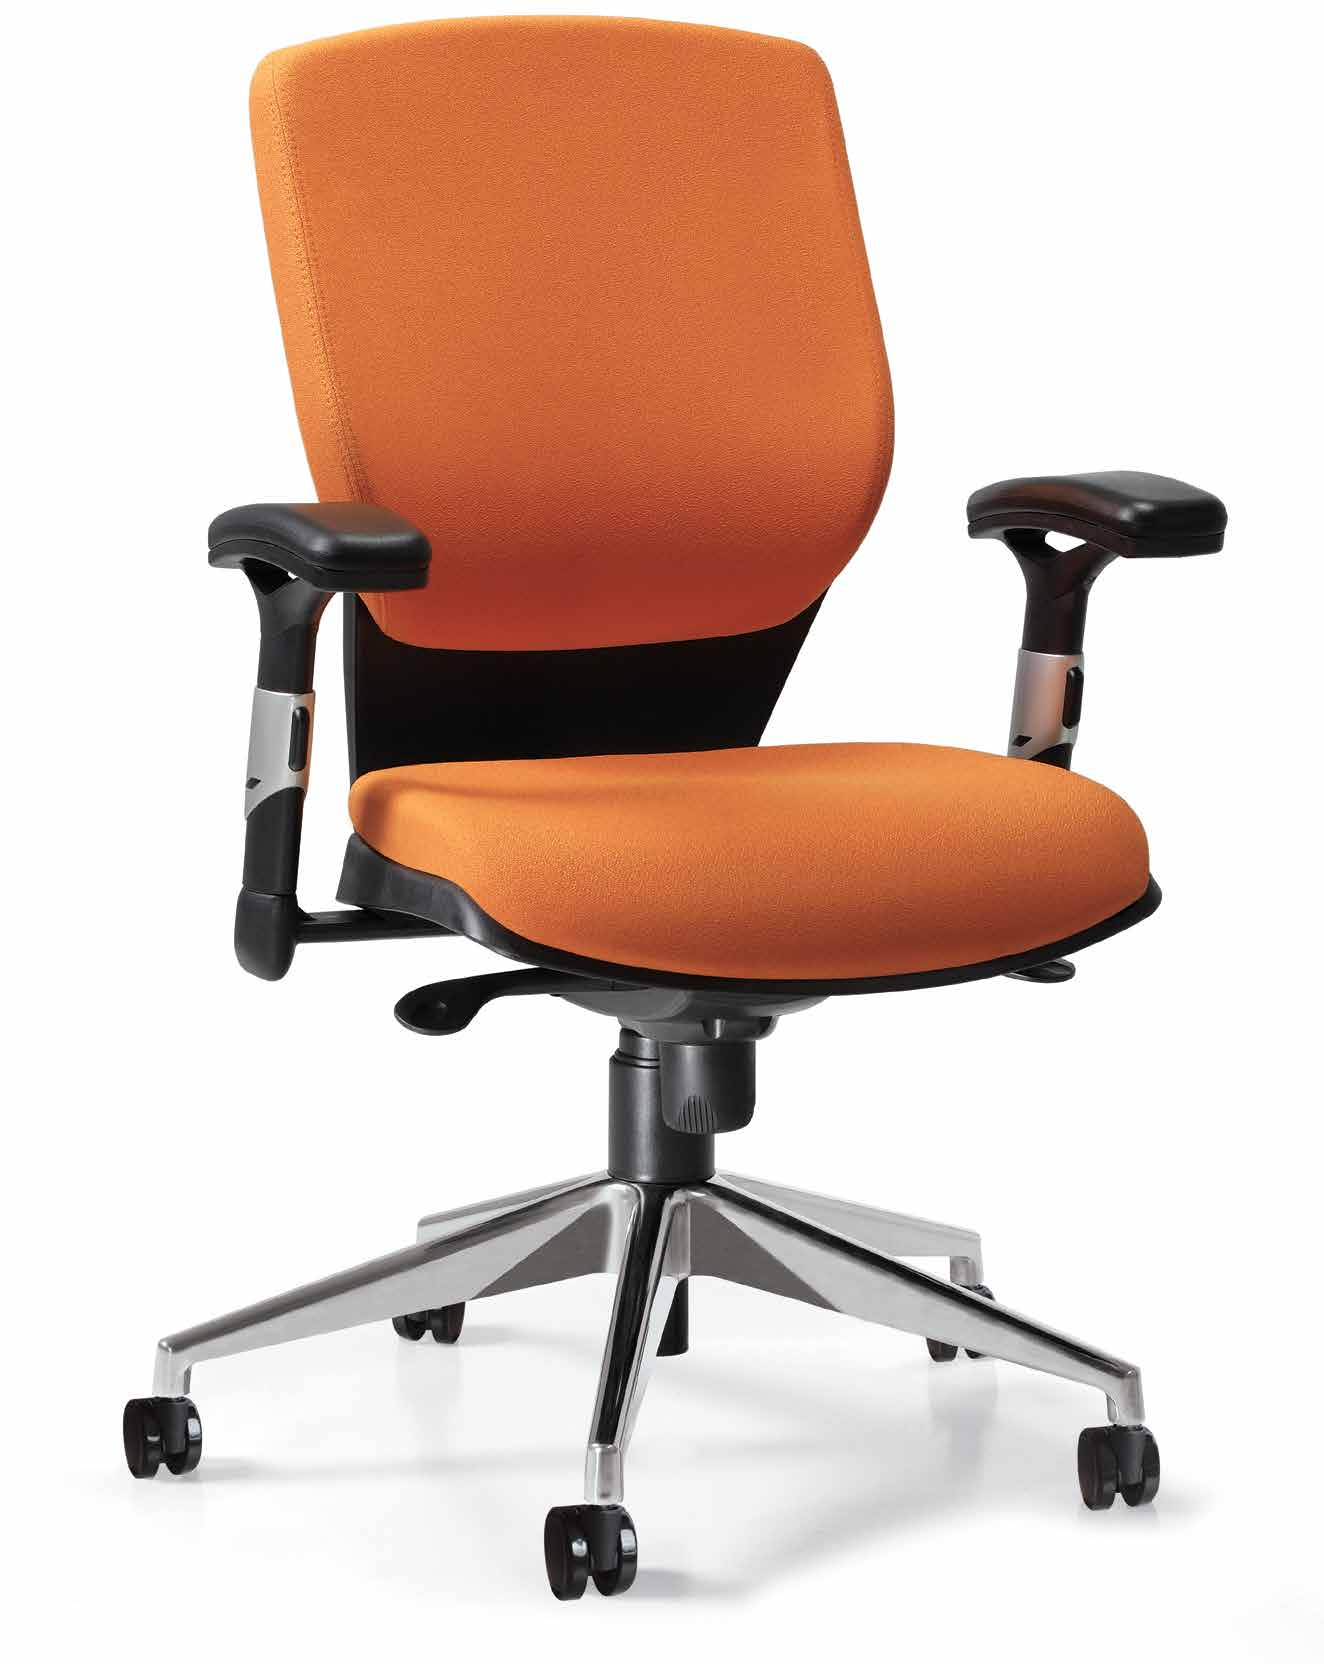 420i Cadeira giratória com espaldar médio em tecido ou símile couro (assento e encosto) e mecanismo